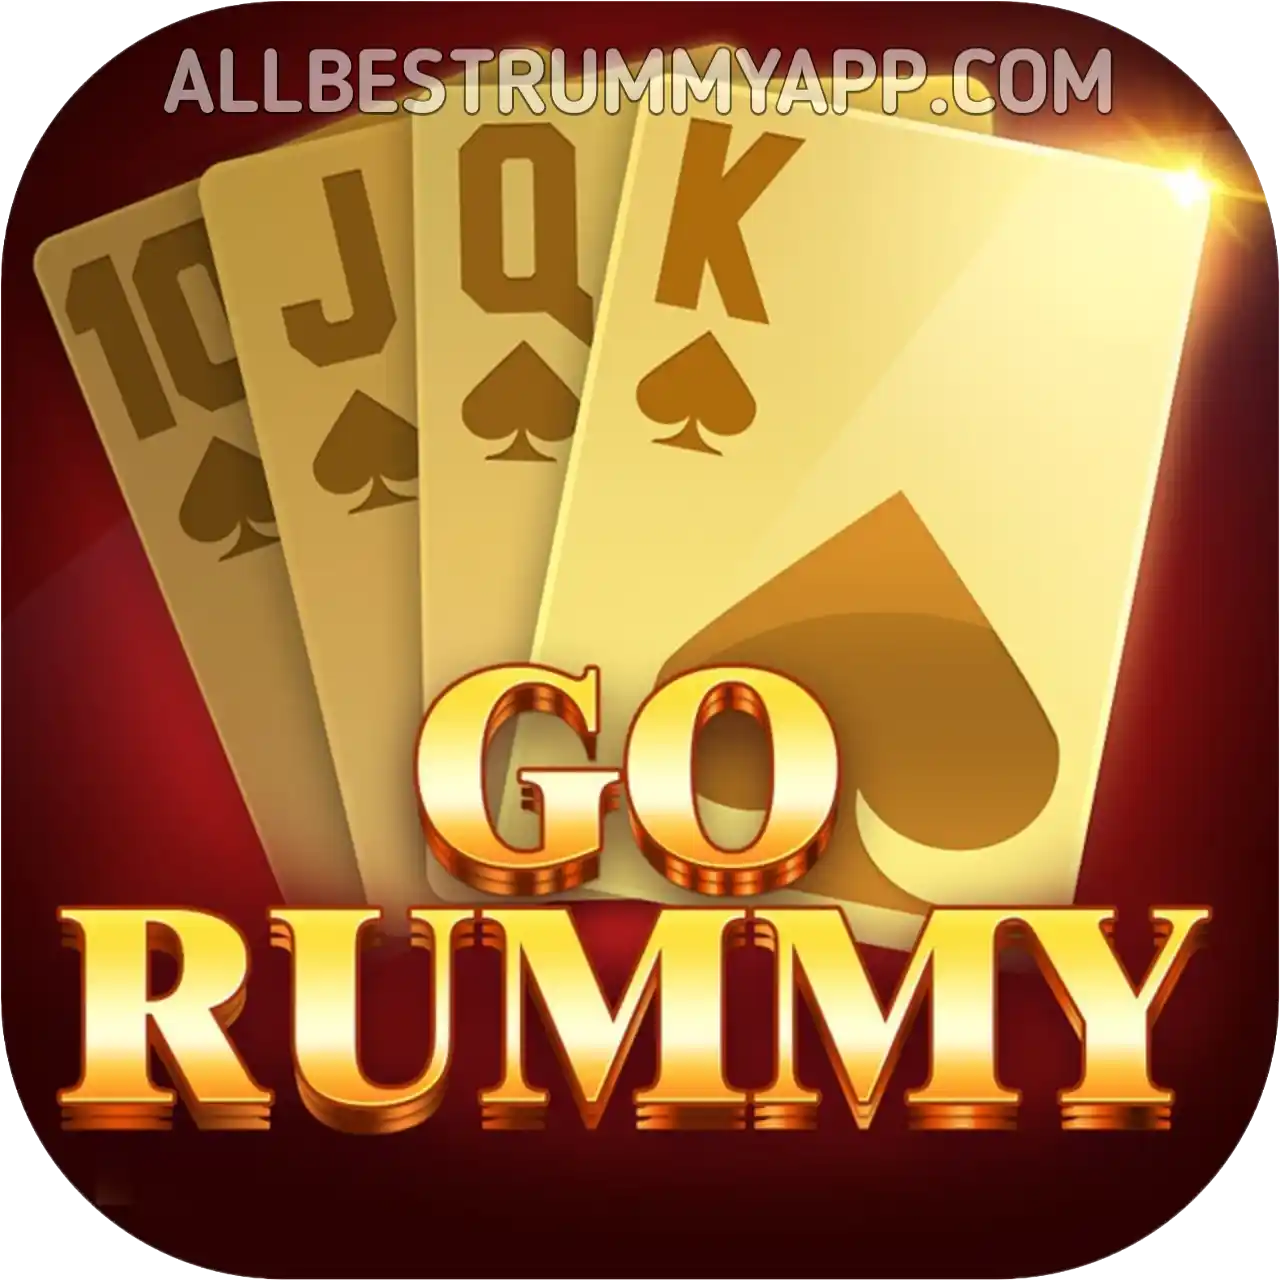 Go Rummy Logo - All Best Rummy App